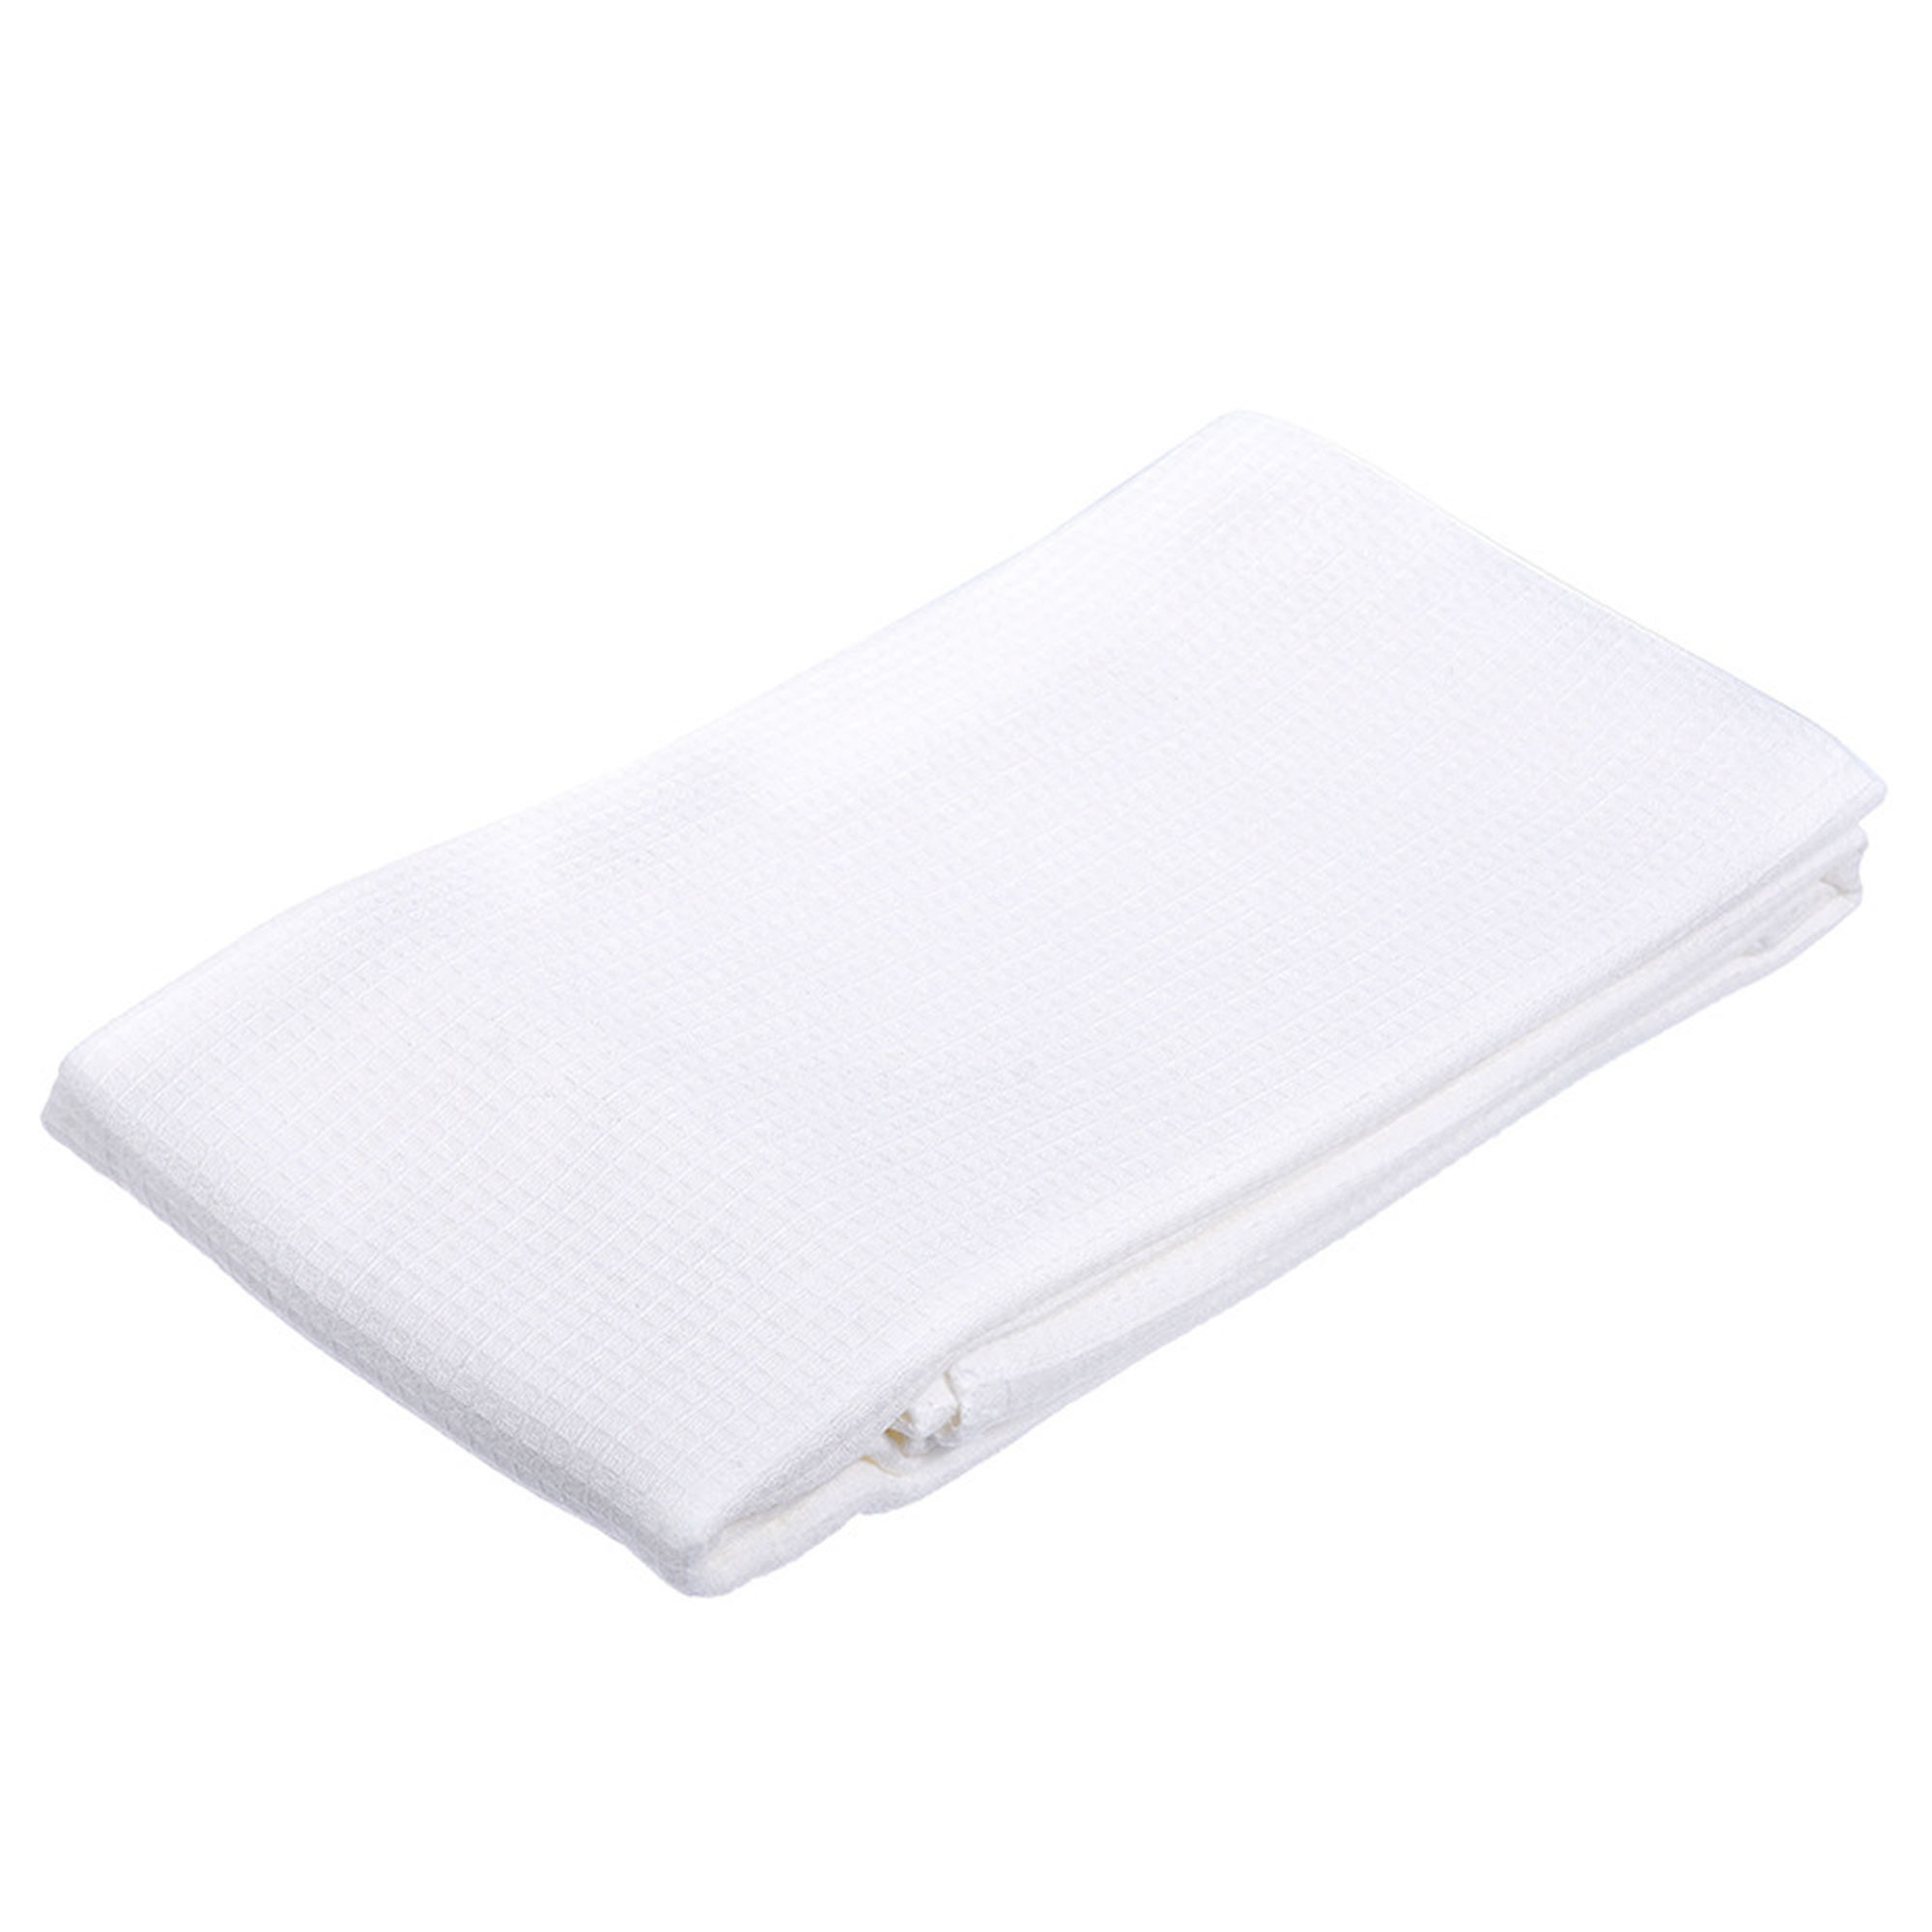 Вафельное полотенце-простынь банное, белое 80x150 см 